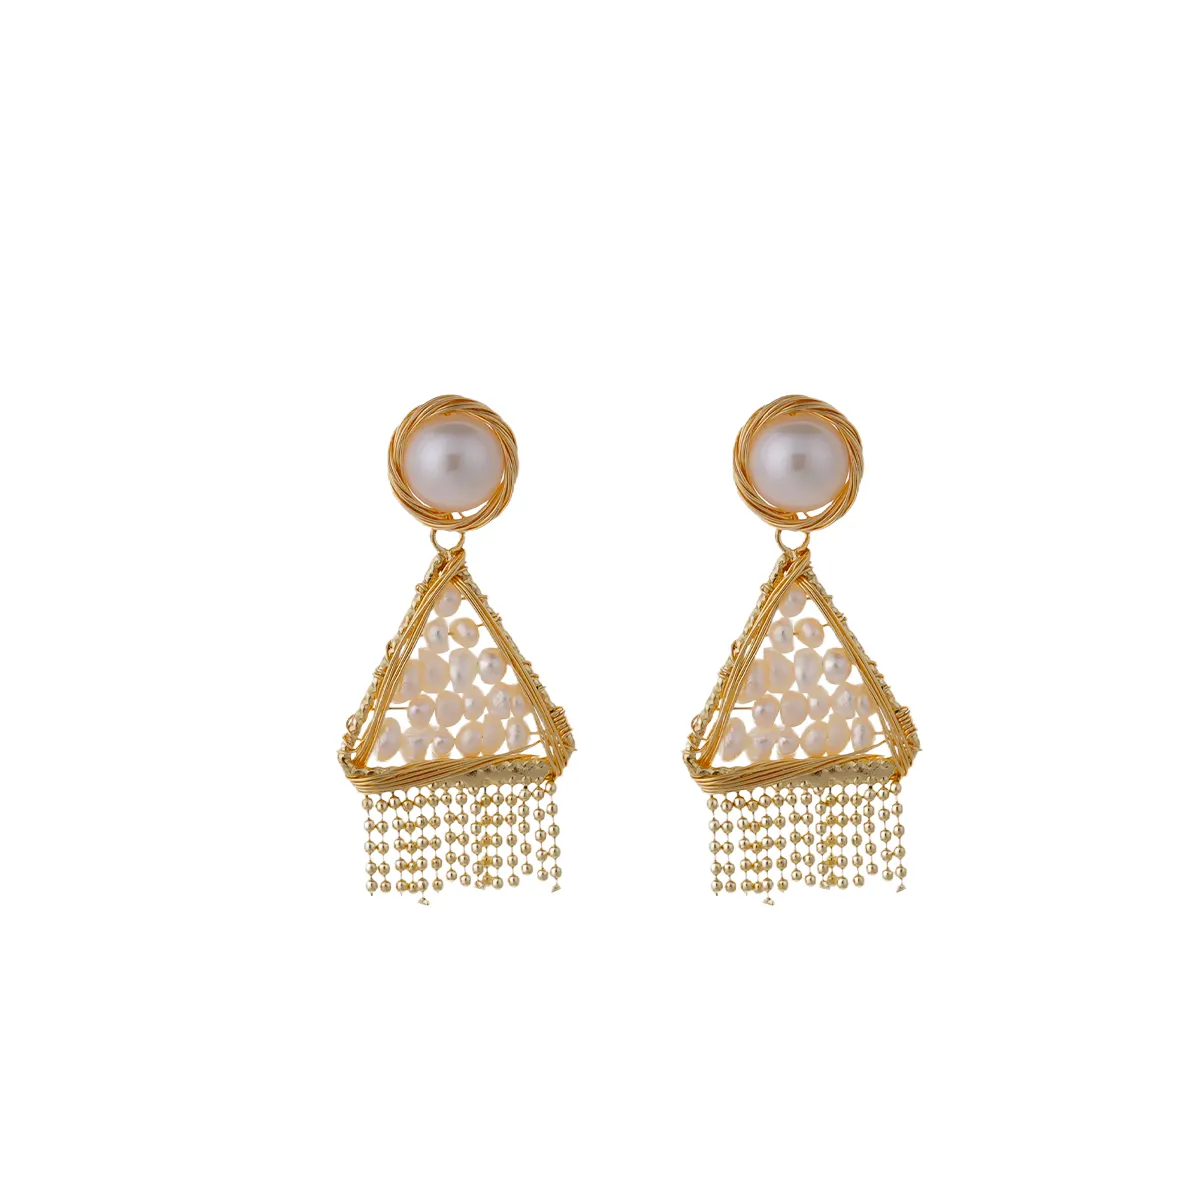 Bohème-Stil Cz Stein Perle Krone Erklärung Dinkel-Ohrringe für Damen Turm-Design Champagner Gold Bling Luxus-Schmuck Neues